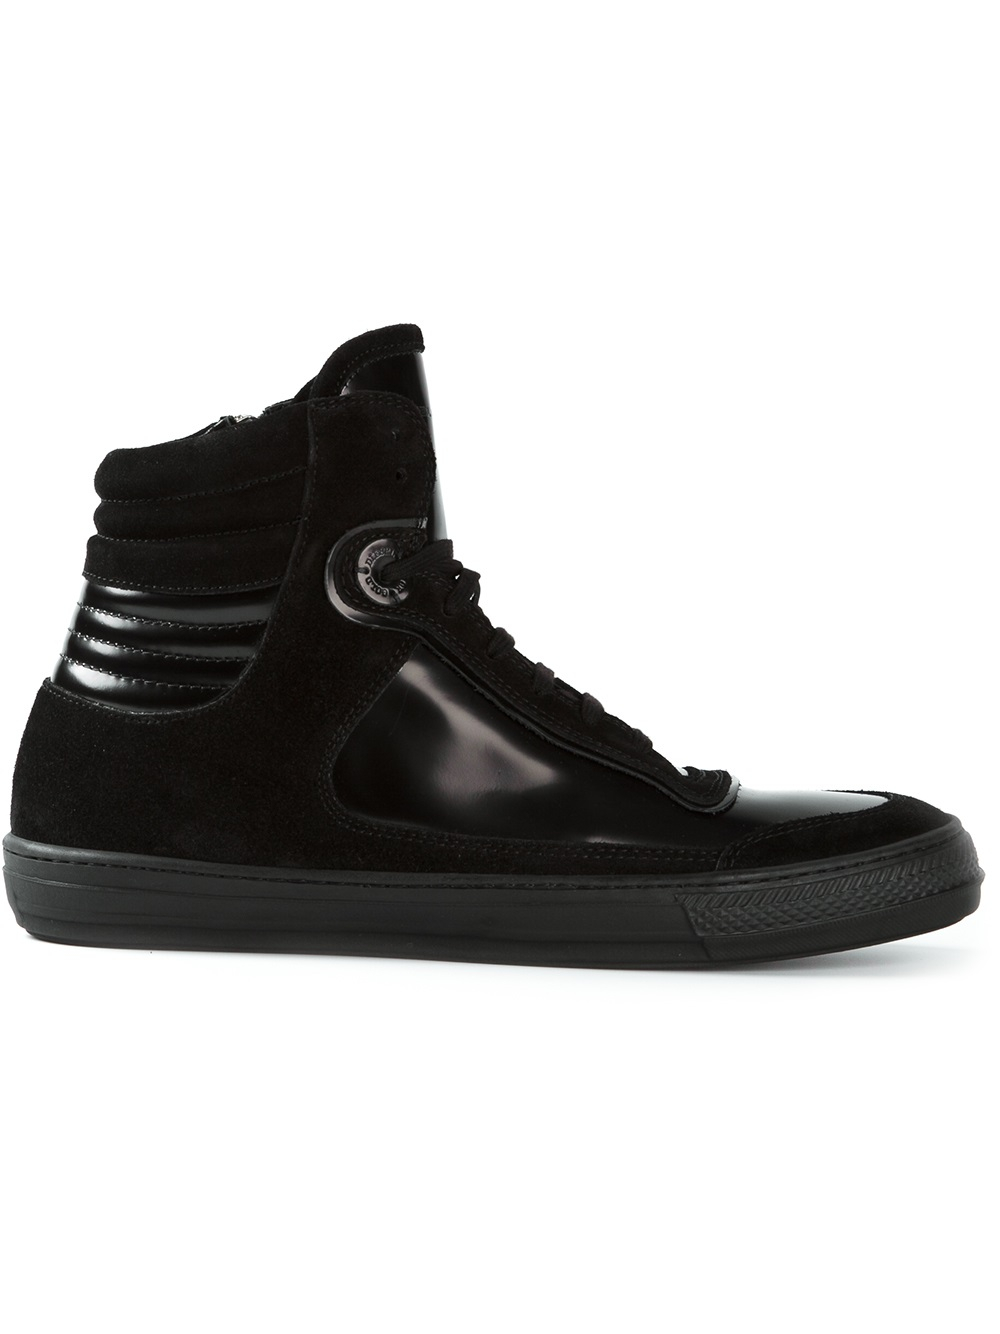 Diesel Black Gold 'Diamond' Hi-Top Sneakers in Black for Men - Lyst